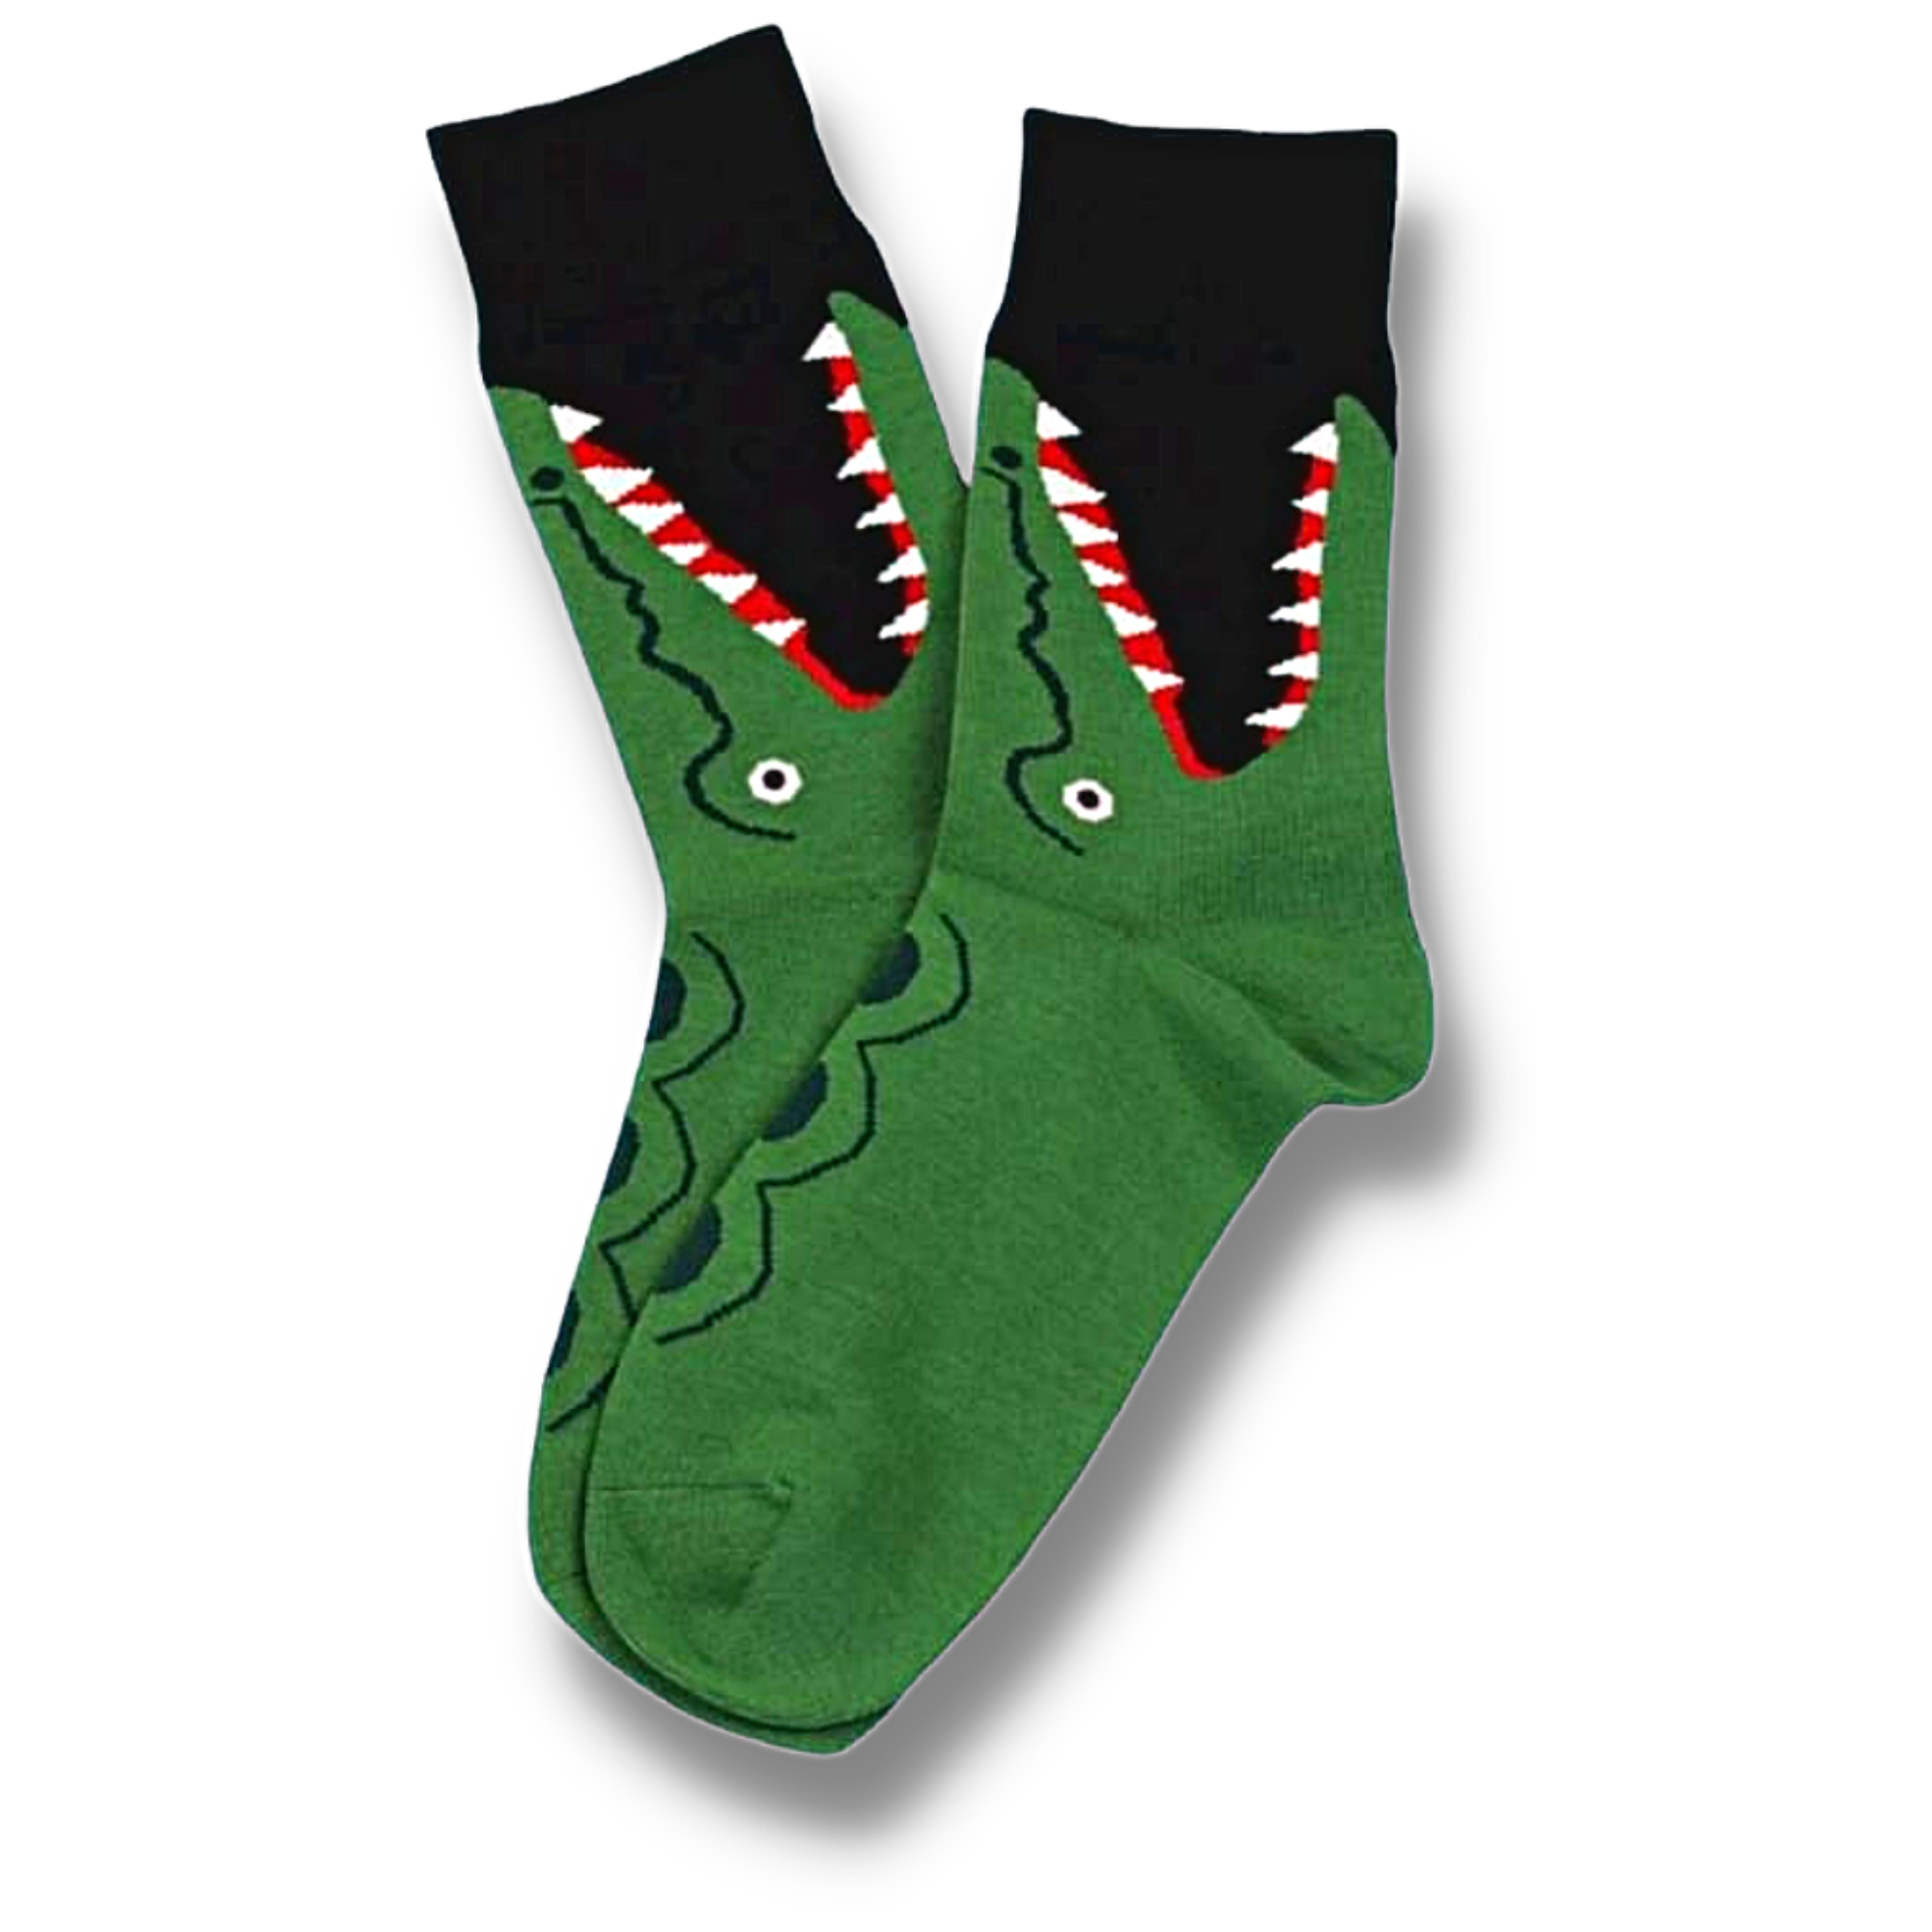 Crocodile Men's Socks (Size 7-10)